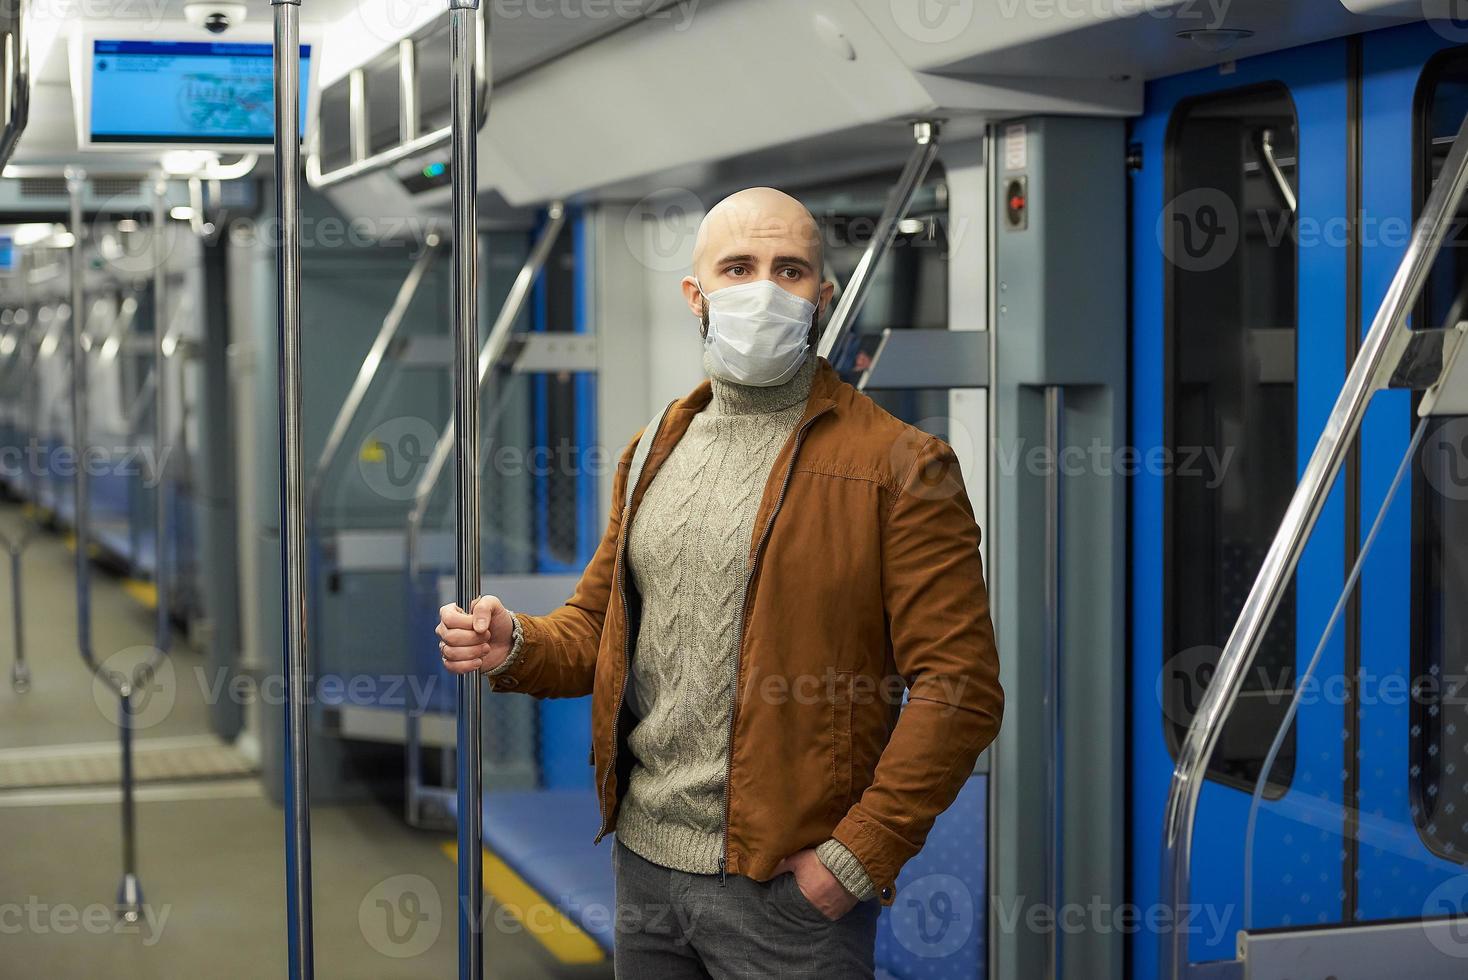 Ein kahlköpfiger Mann mit Bart in einer Gesichtsmaske hält den Handlauf in einem U-Bahnwagen foto